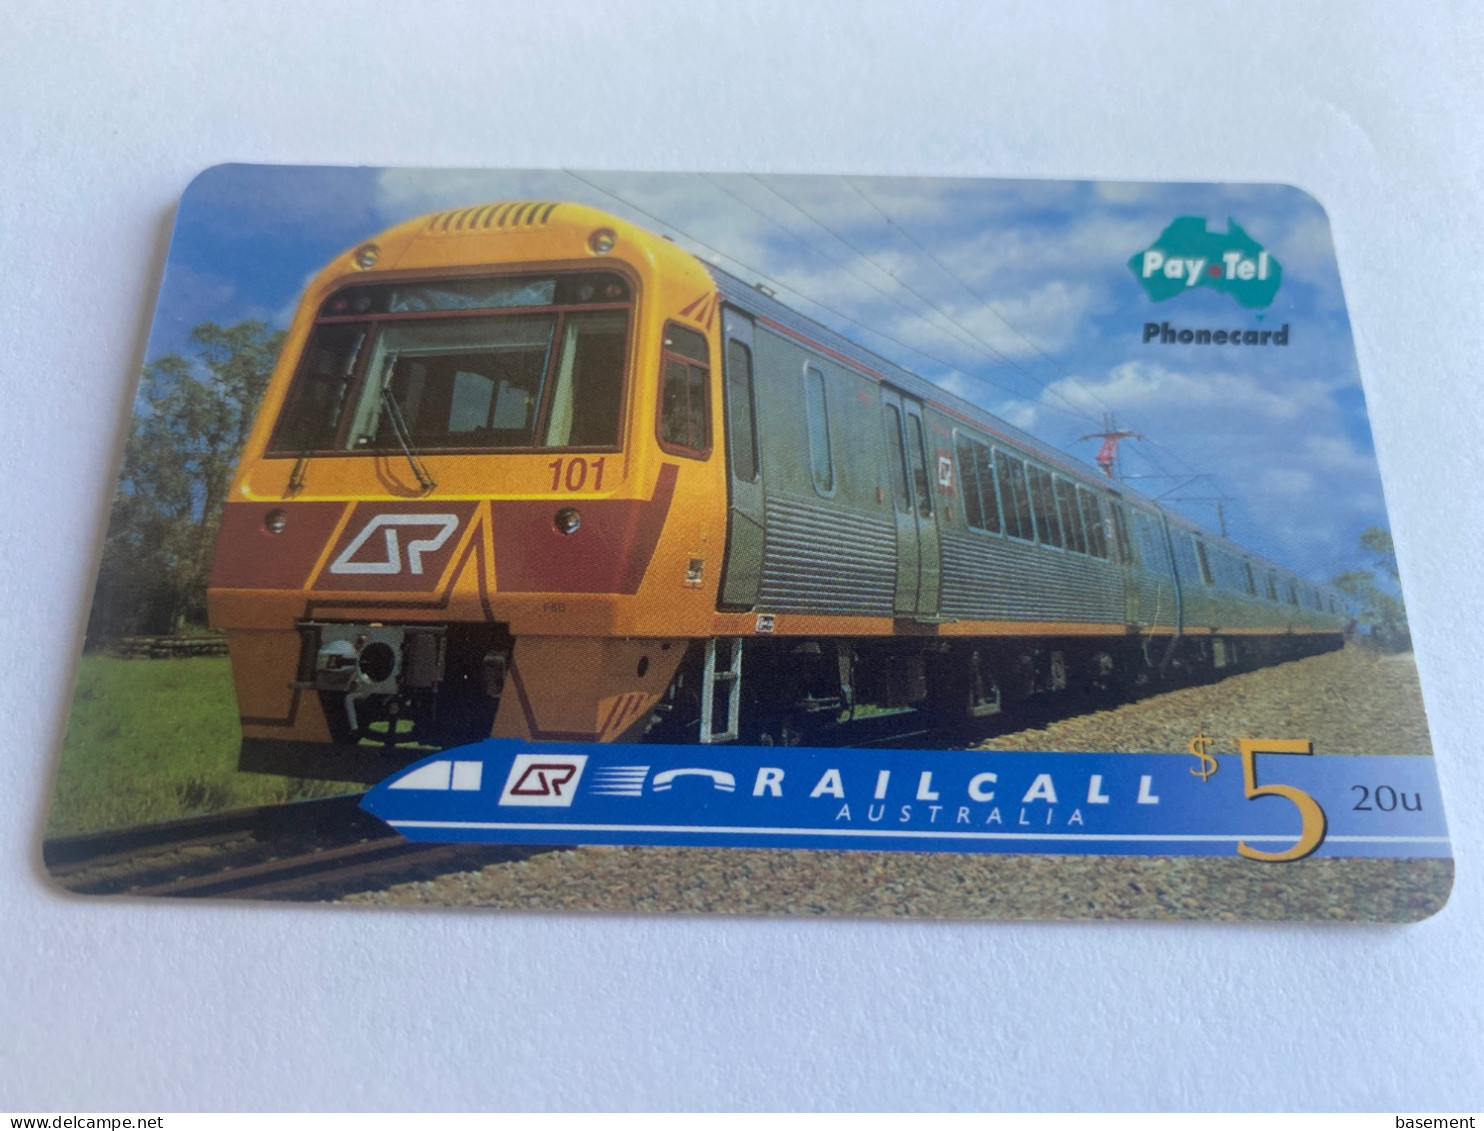 1:042 - Australia Pay Tel RailCall Train - Australia